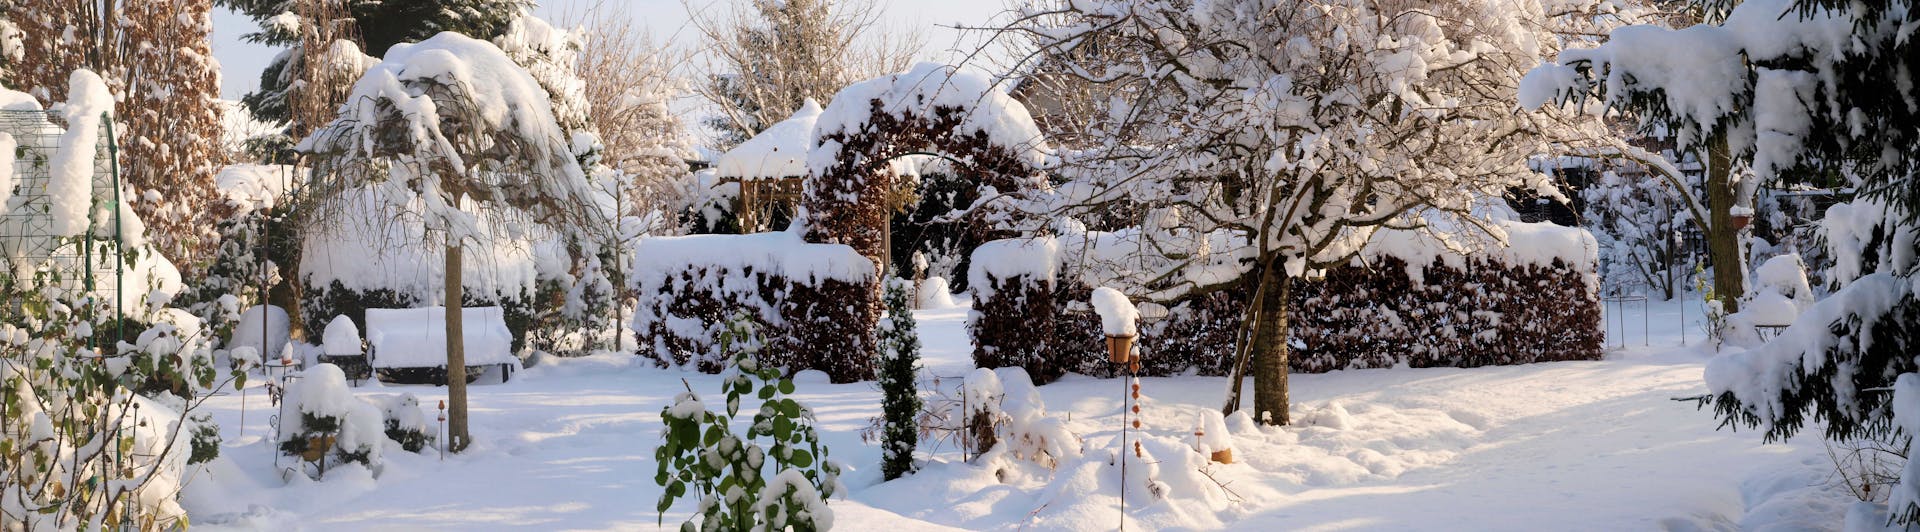 Schnee im Garten - was sollte man dagegen unternehmen?